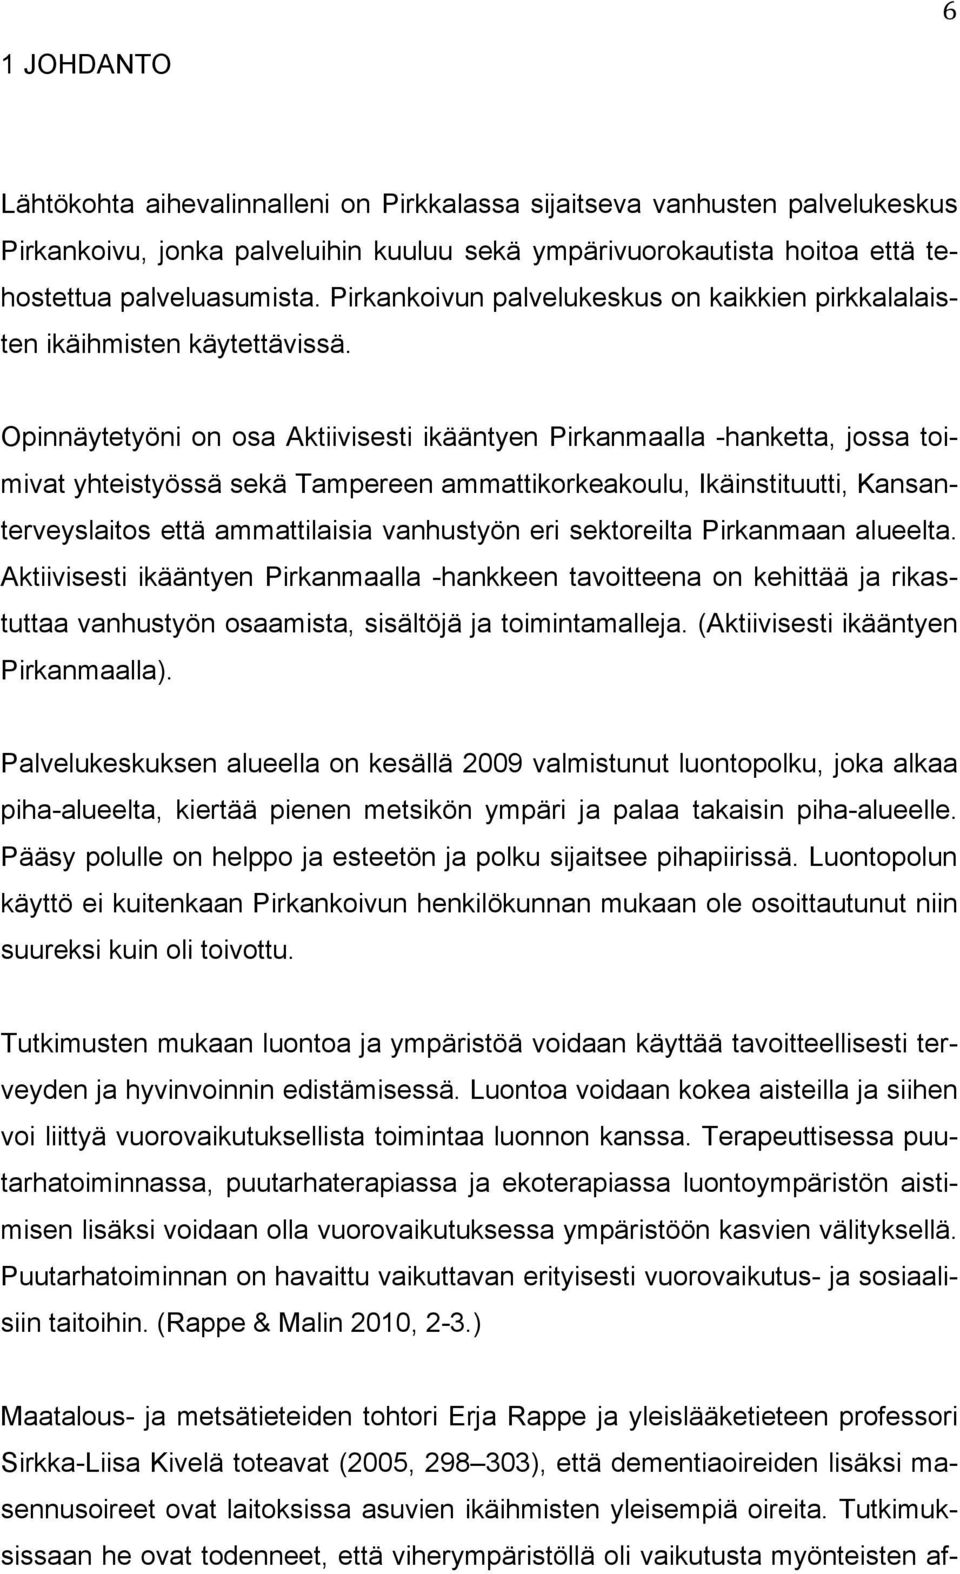 Opinnäytetyöni on osa Aktiivisesti ikääntyen Pirkanmaalla -hanketta, jossa toimivat yhteistyössä sekä Tampereen ammattikorkeakoulu, Ikäinstituutti, Kansanterveyslaitos että ammattilaisia vanhustyön